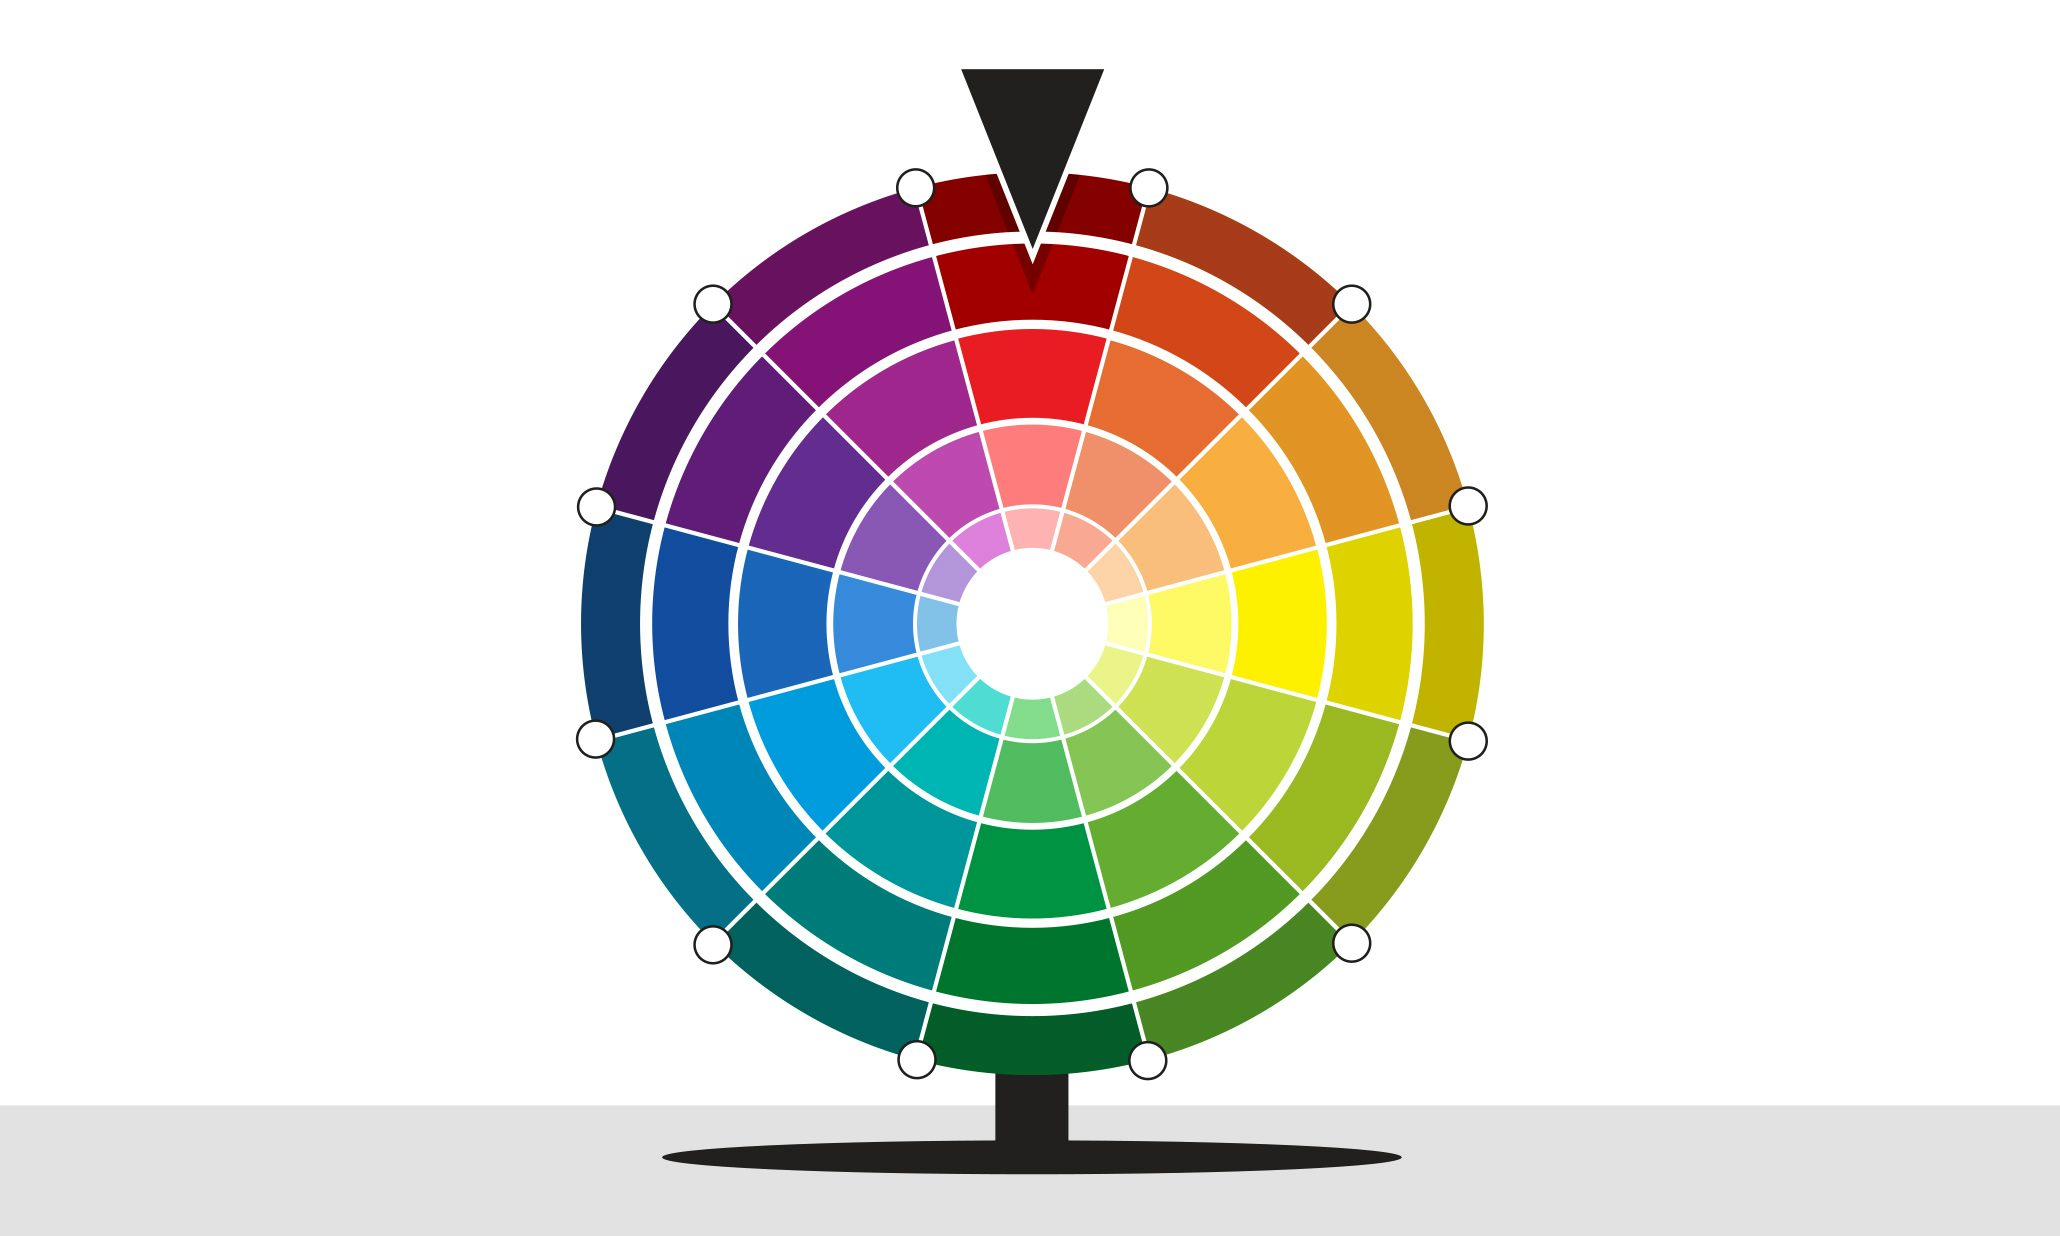 Bạn đang tìm kiếm cách lựa chọn màu sắc thương hiệu để tạo ra ấn tượng với khách hàng của mình? Hãy để chúng tôi cung cấp cho bạn những lời khuyên hữu ích và giải đáp các thắc mắc của bạn. Tham khảo hình ảnh liên quan đến chủ đề này để khám phá những bí quyết và kỹ thuật tạo ra một tông màu phù hợp với thương hiệu của bạn.